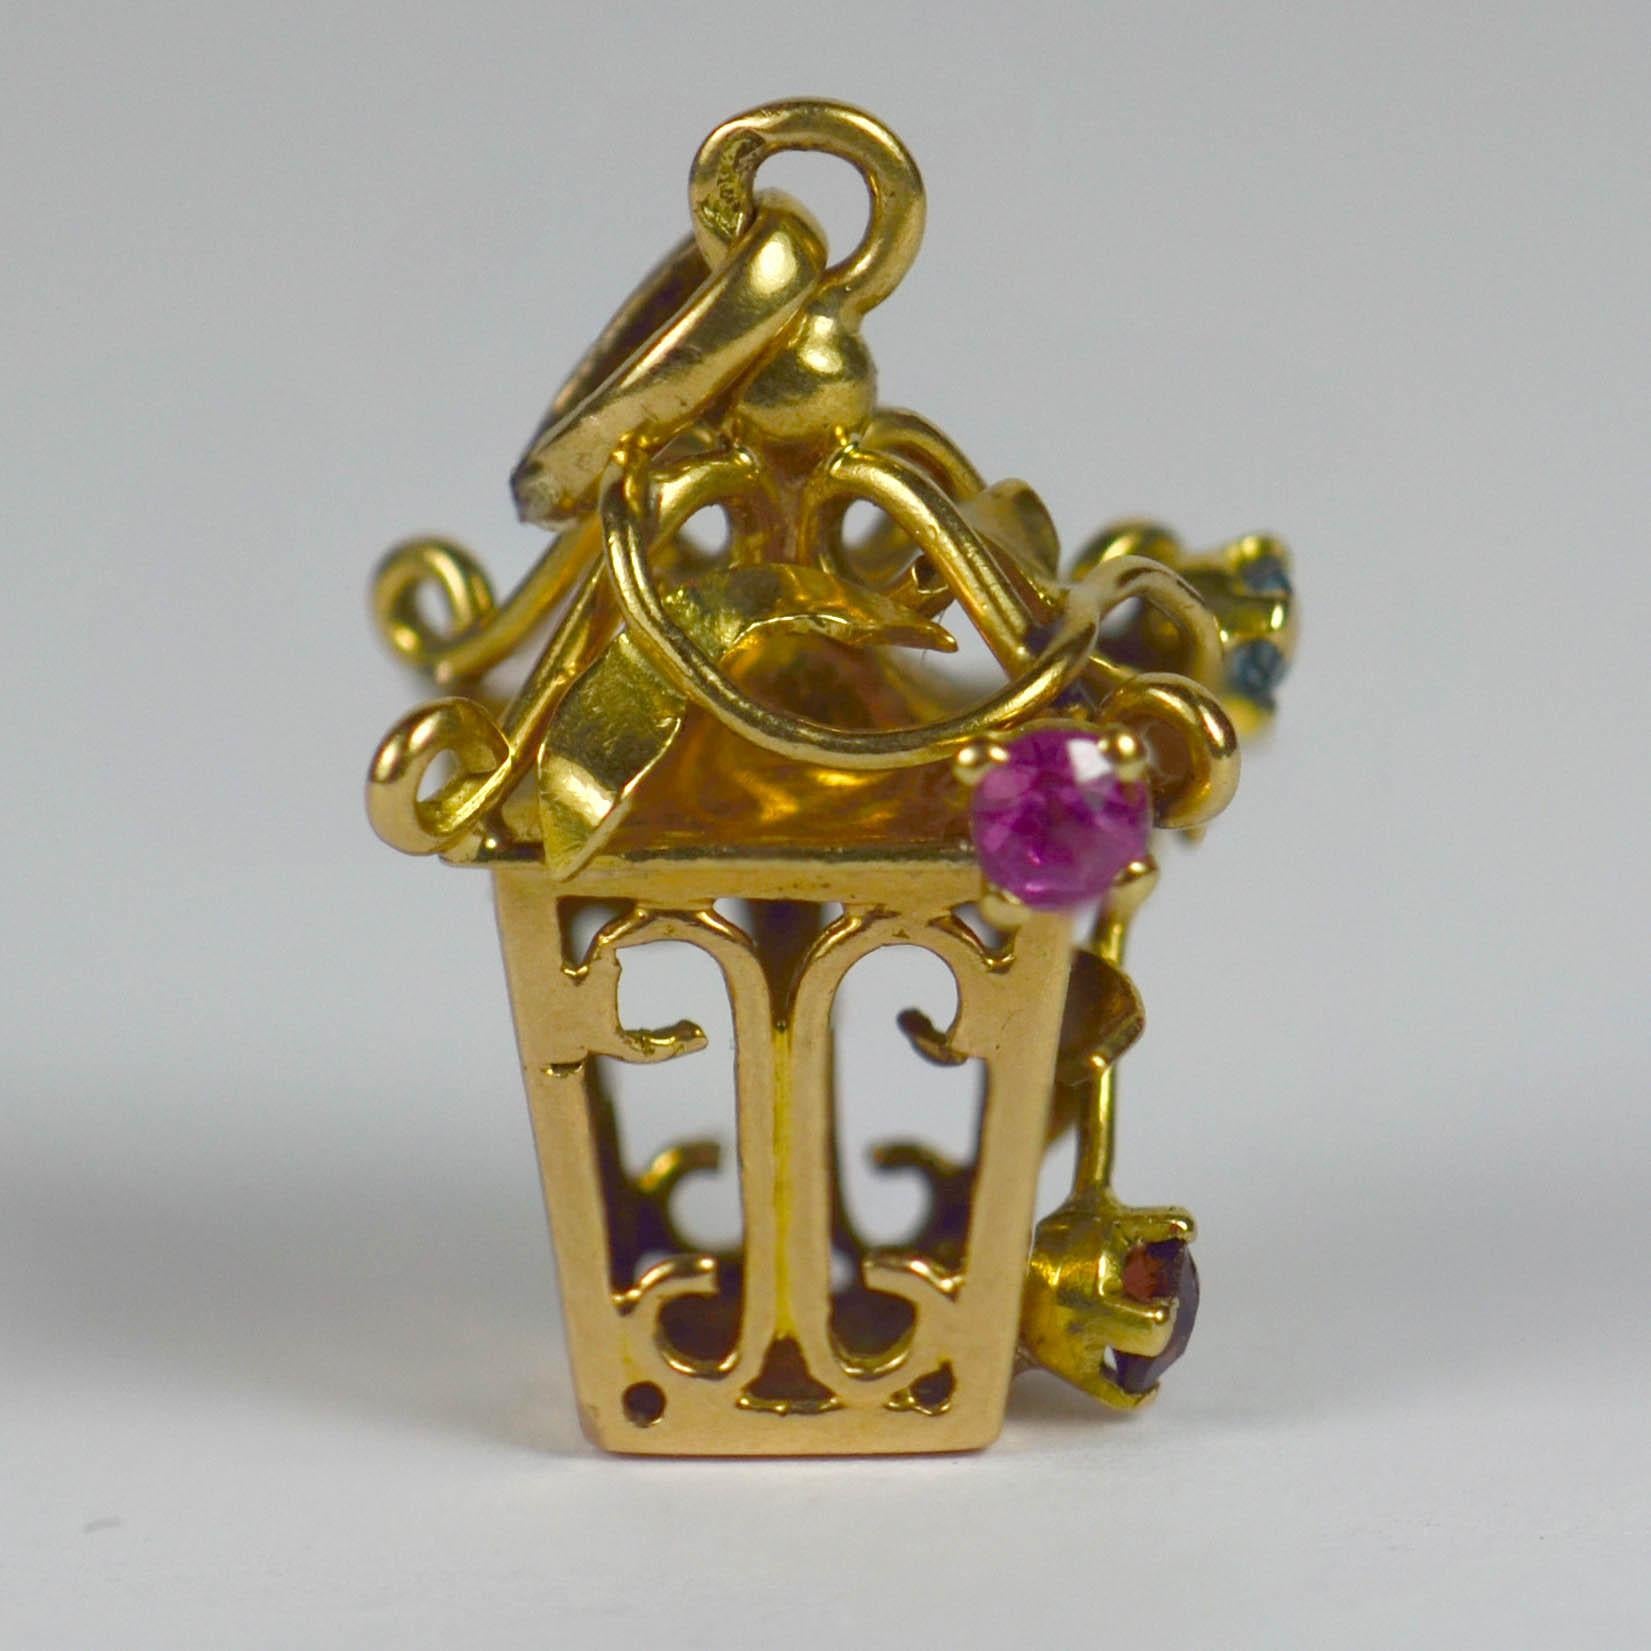 Pendentif à breloque en or jaune 18 carats de style français, conçu comme une lanterne avec une vigne grimpante sertie de pierres précieuses. Estampillée de la tête d'aigle pour la fabrication française en or 18 carats, la vigne est sertie de